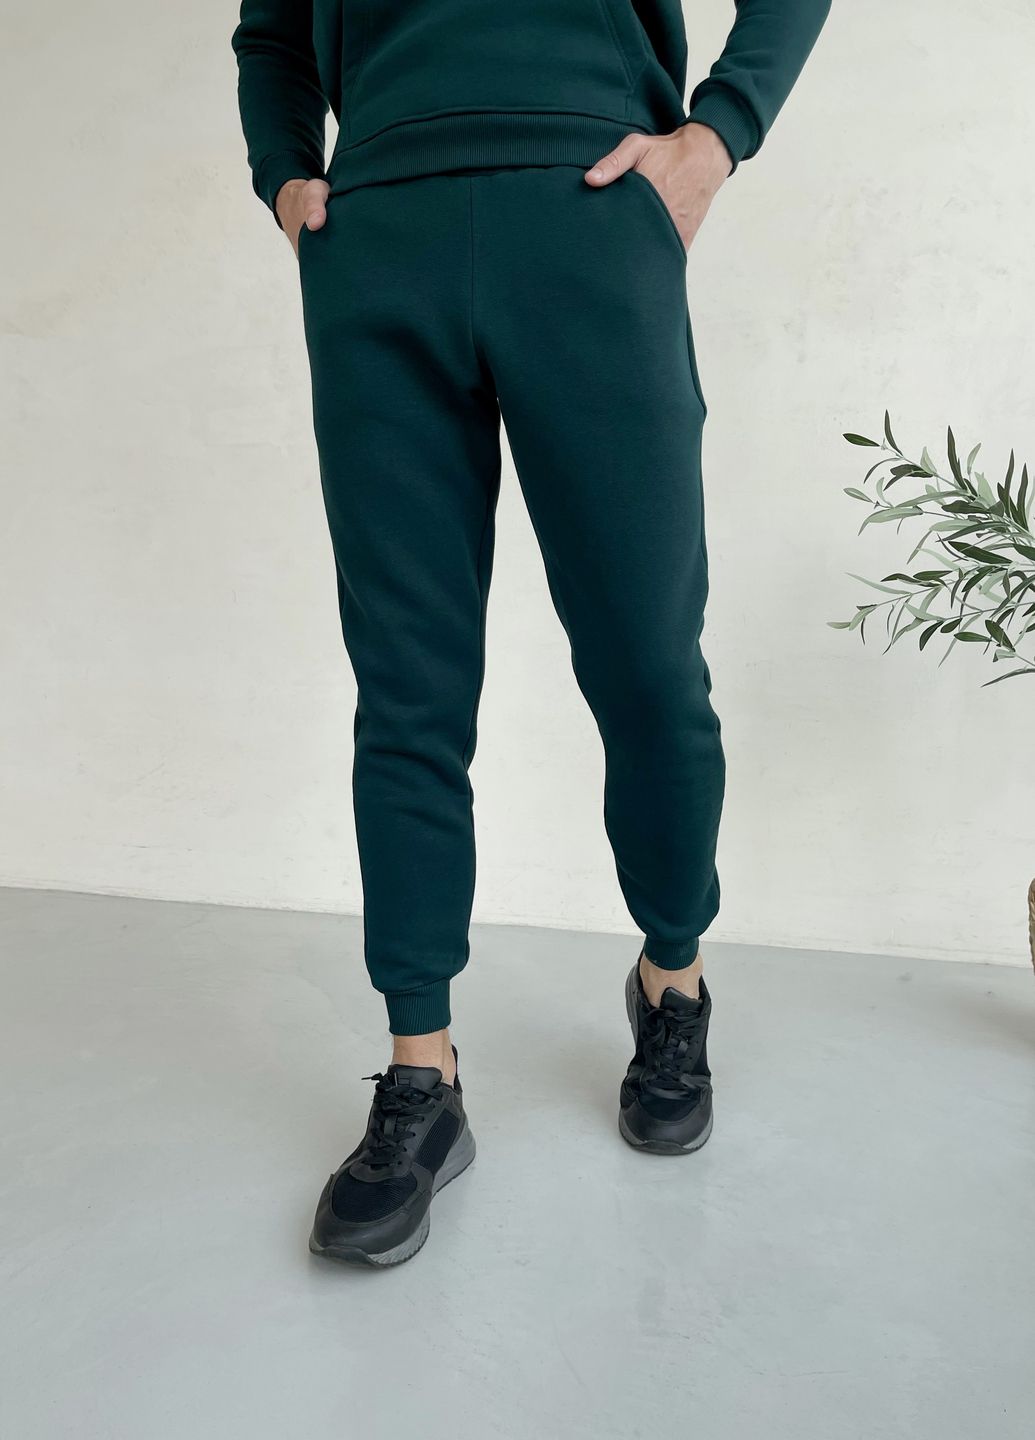 Купить Теплый зимний мужской спортивный костюм на флисе зелёный Merlini Франс 100001002, размер 42-44 (S-M) в интернет-магазине